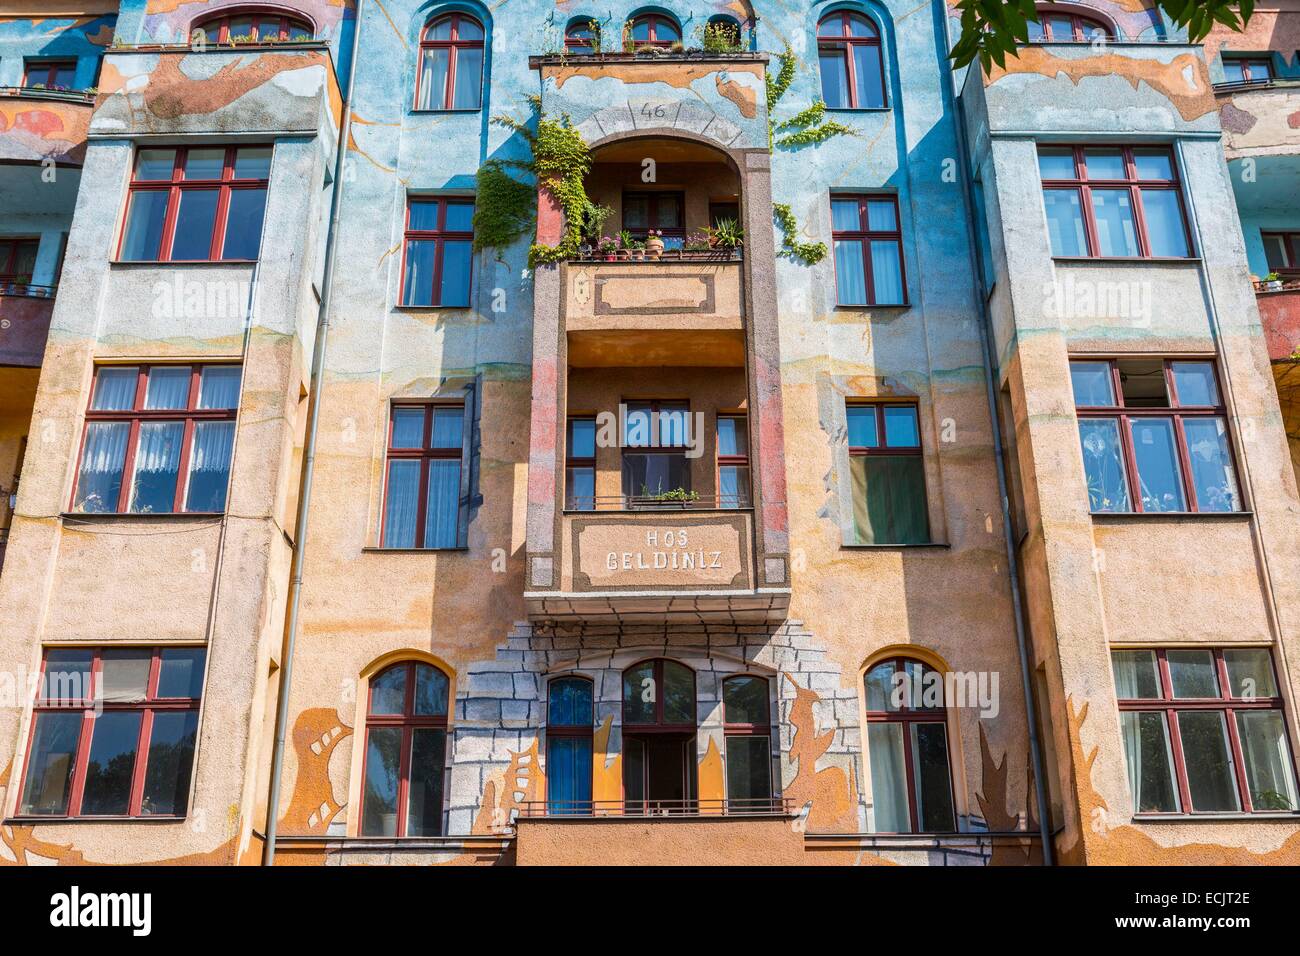 Alemania, Berlín, Berlín Oriental, distrito de Kreuzberg, Etiqueta fachada pintada de un edificio en la Falckensteinstrasse Foto de stock